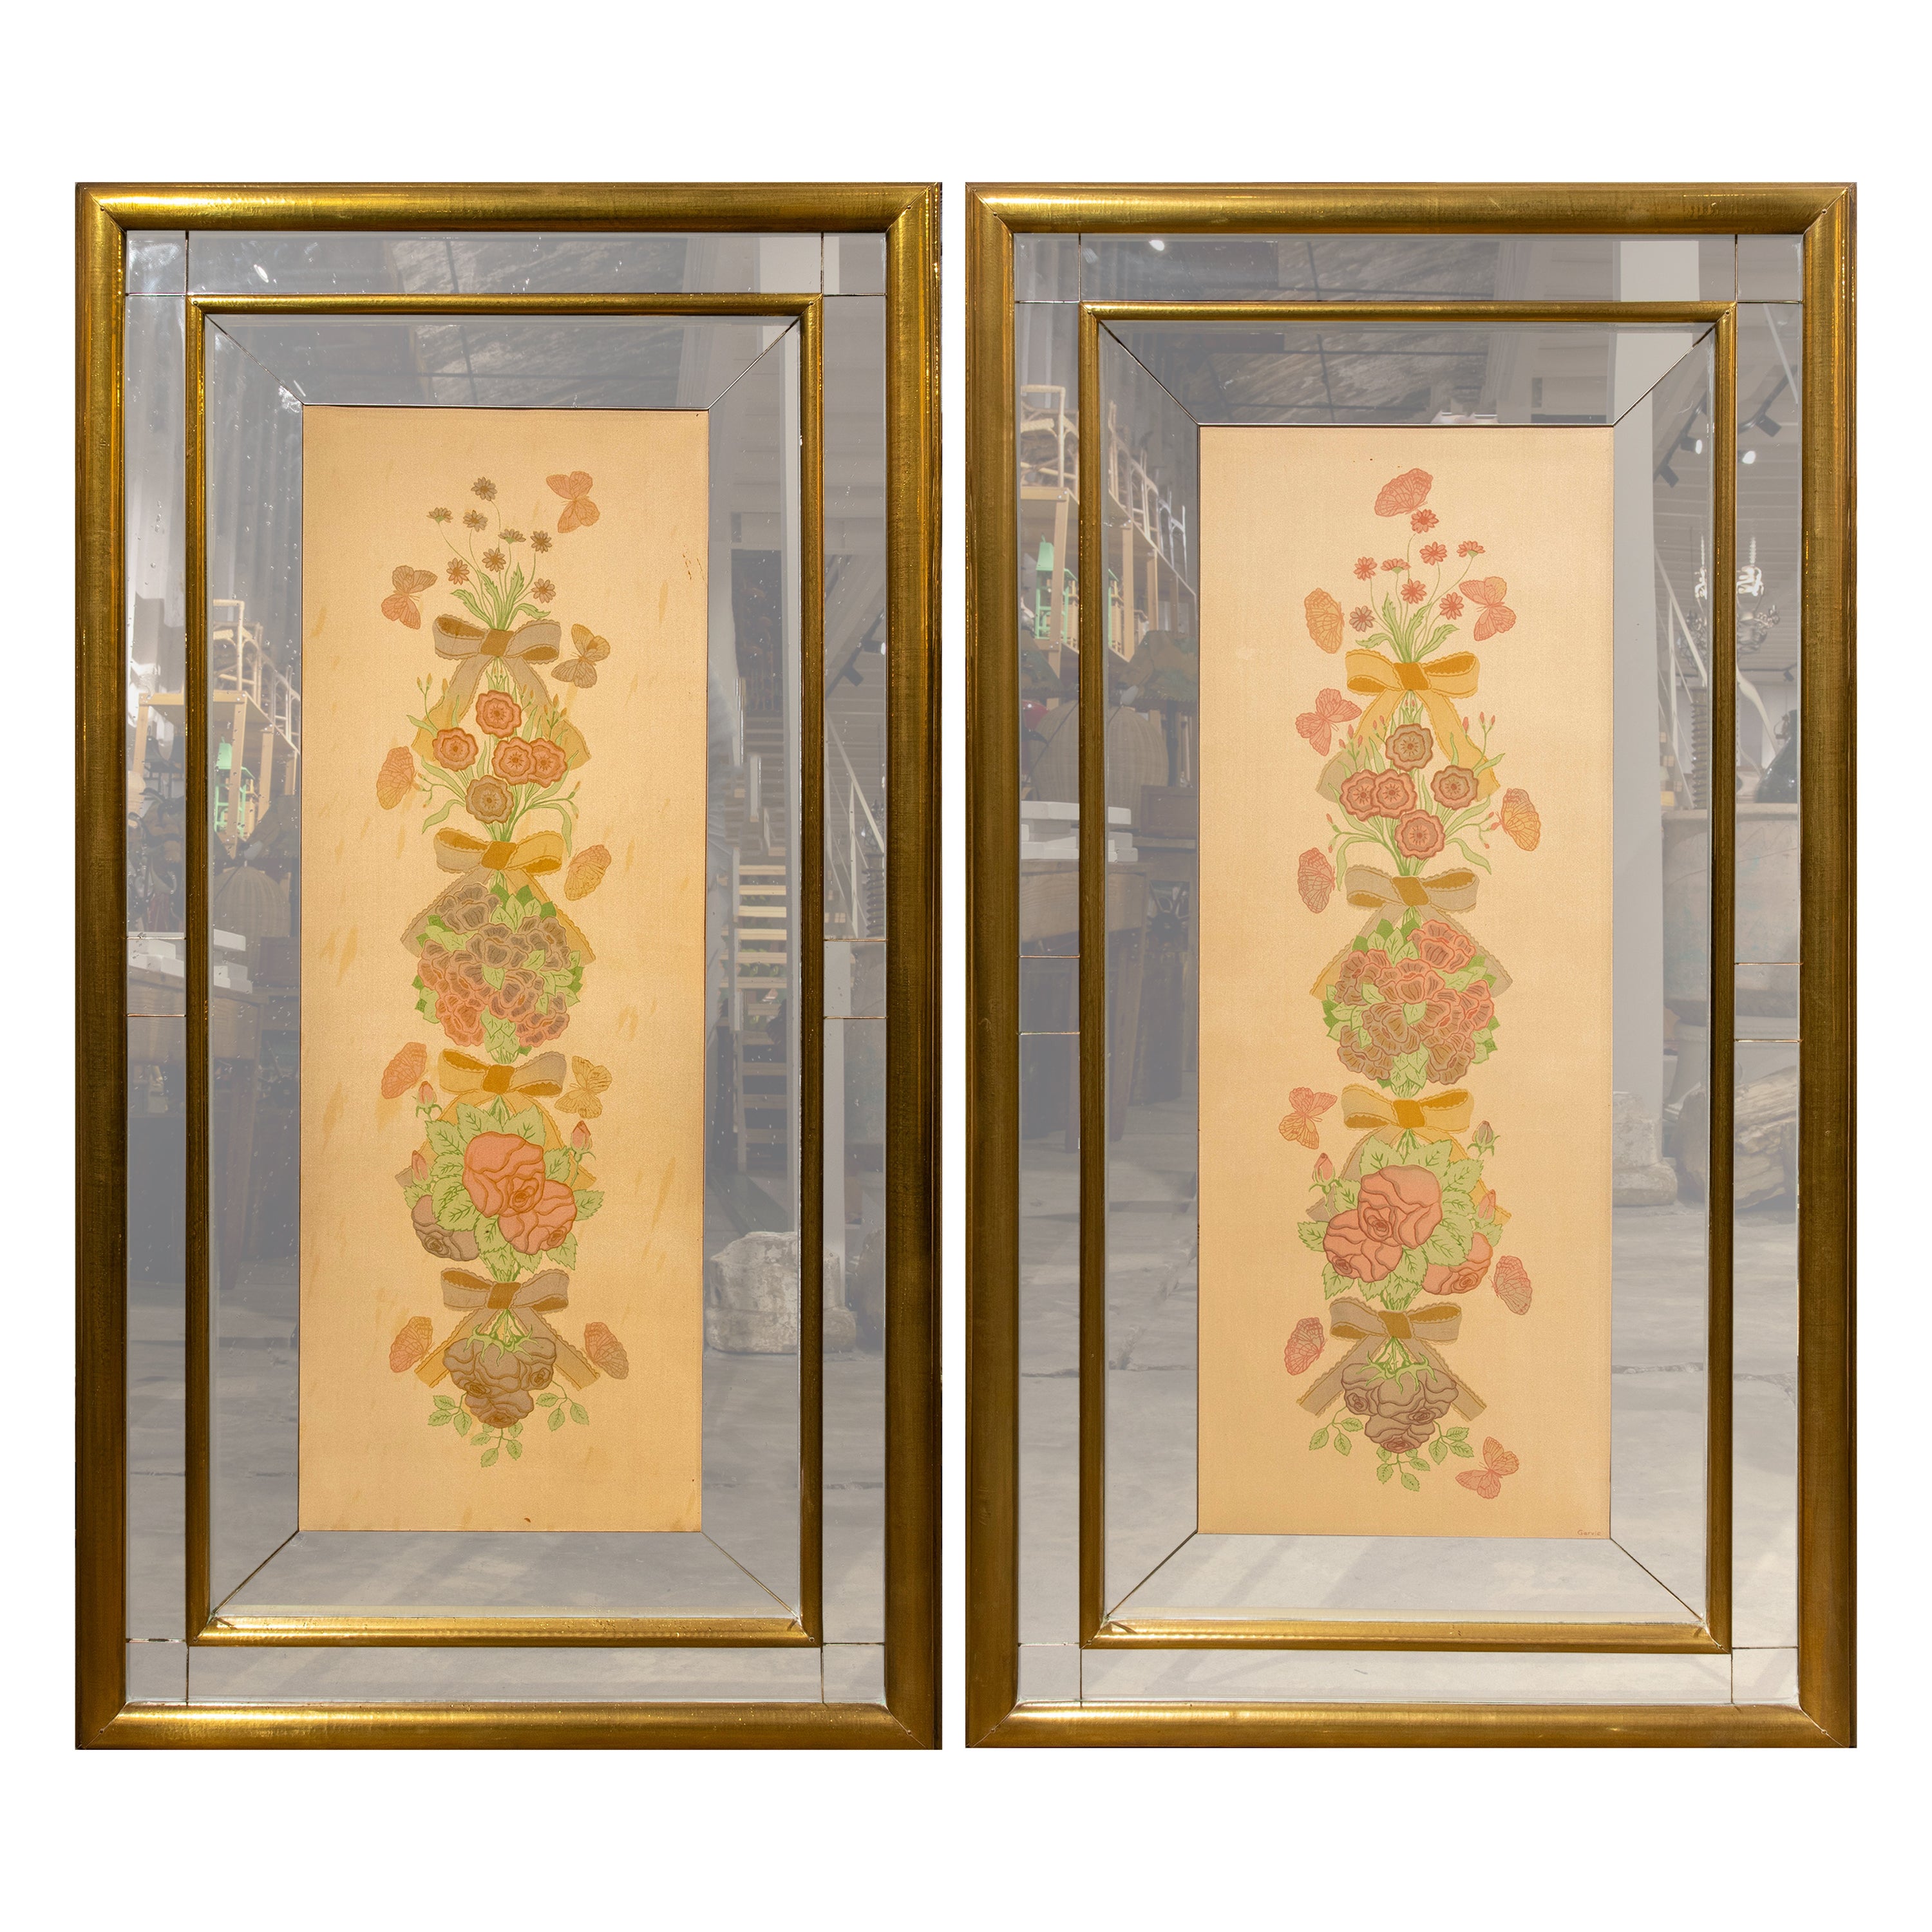 1970er Jahre, Paar handgemalte Blumenbilder auf Seide mit vermessingten Rahmen